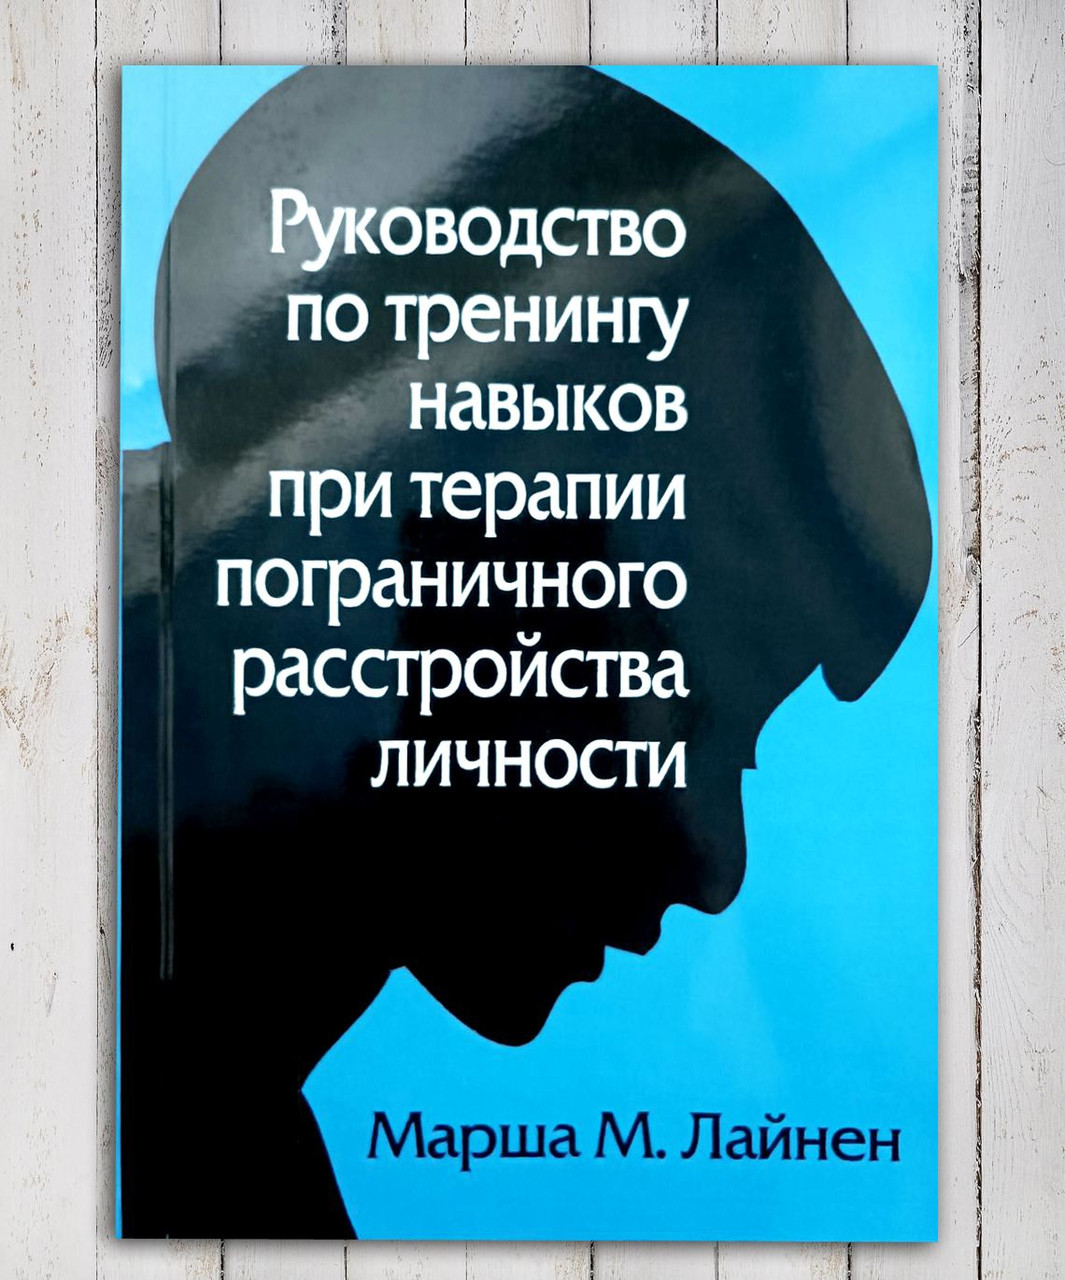 Книга "Конструкція з тренінгу прикордонного розладу особистості " Маршал М. Лайнен